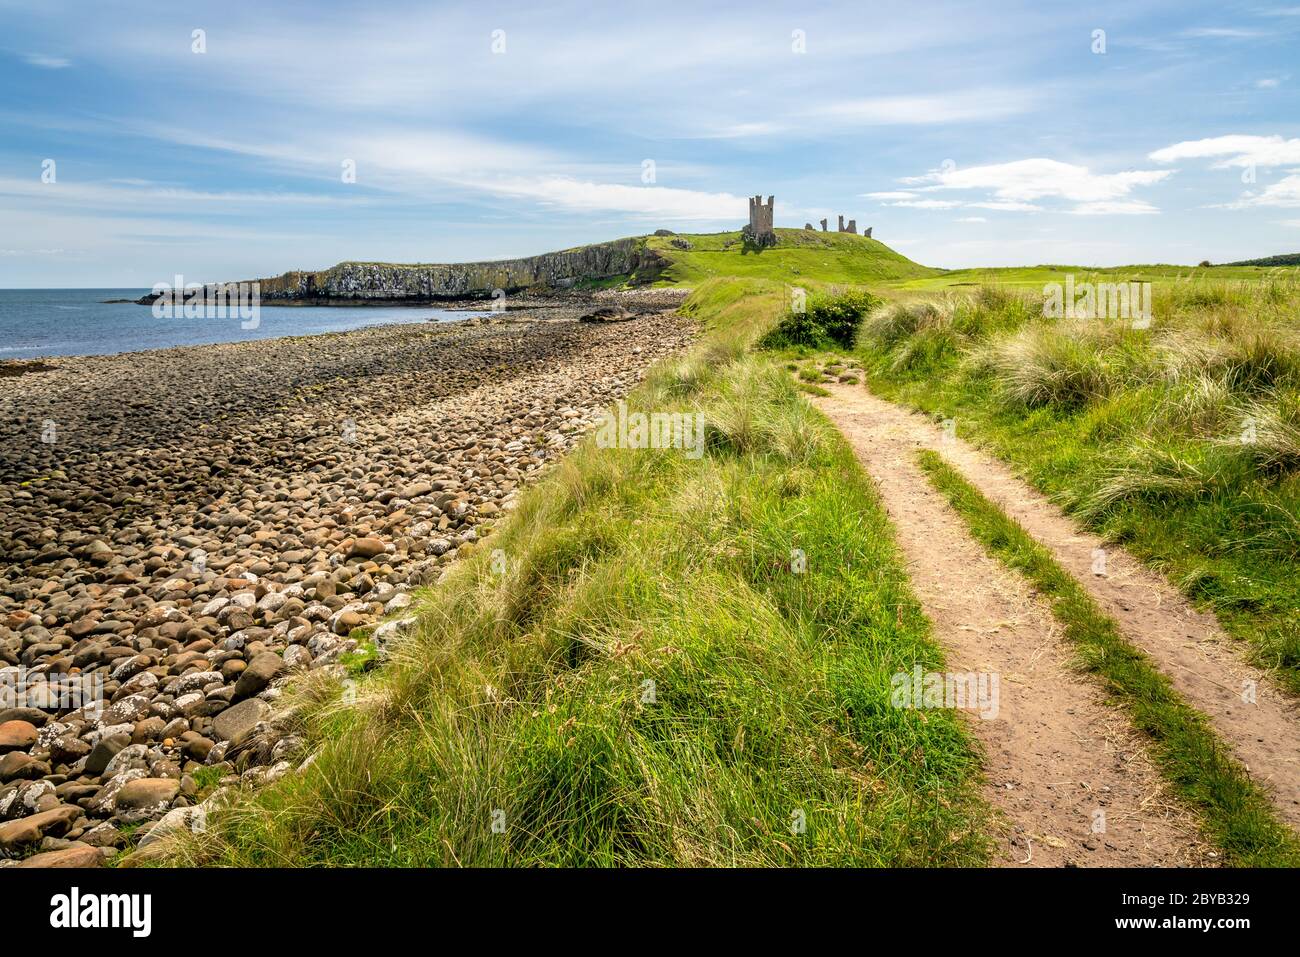 Rovine della Torre di Lilburn, del Castello di Dunstanburgh, Northumberland Foto Stock